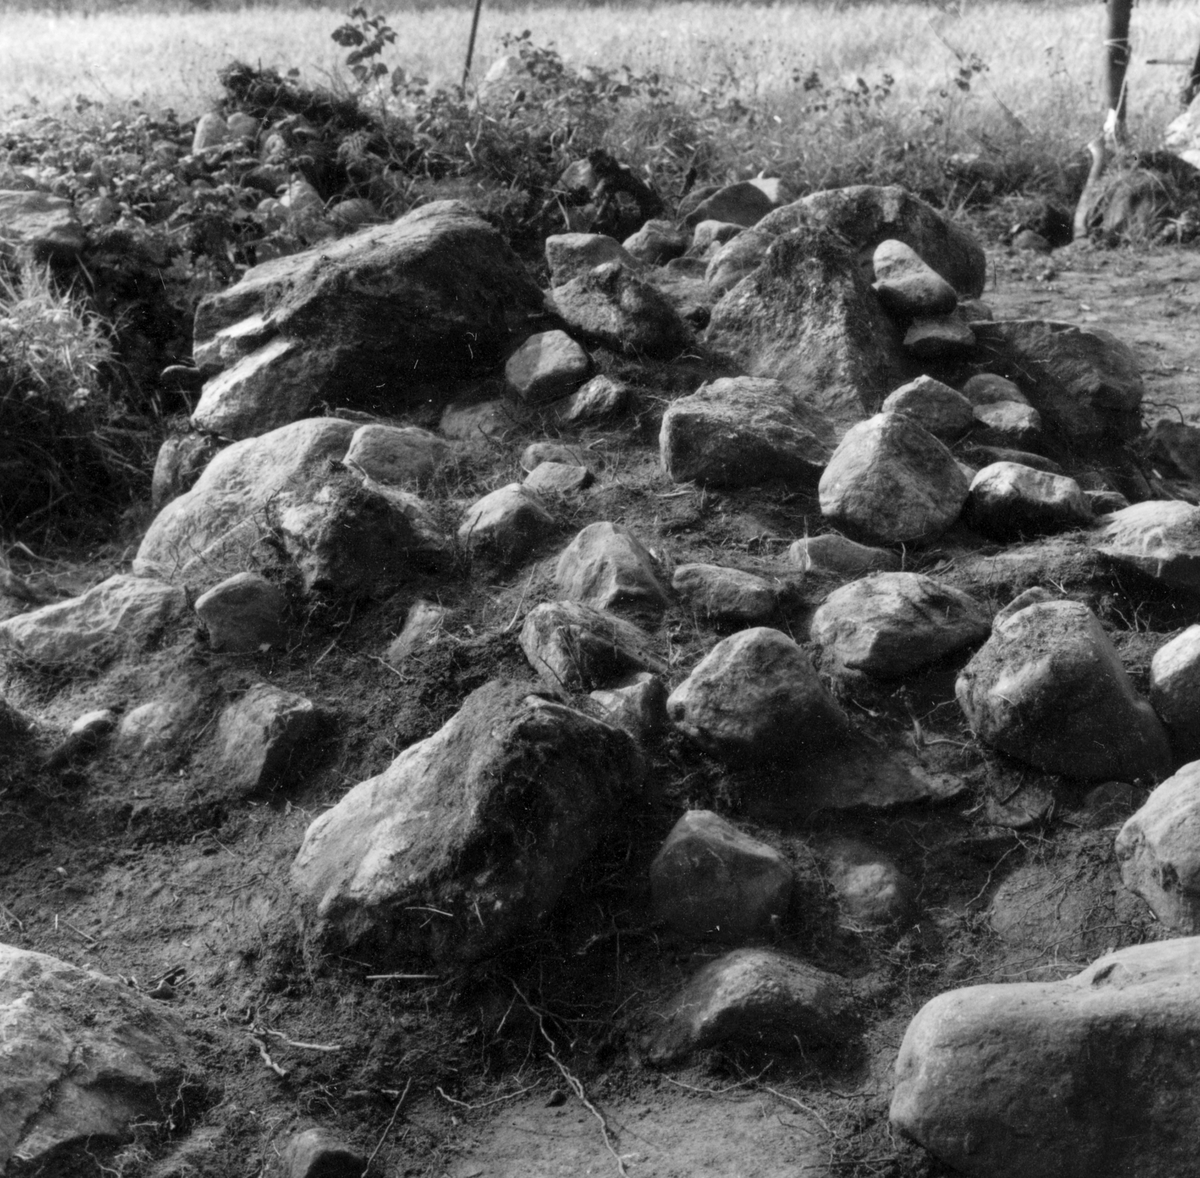 Utgrävningsbilder:
Röse i Ålbo, September 1969.